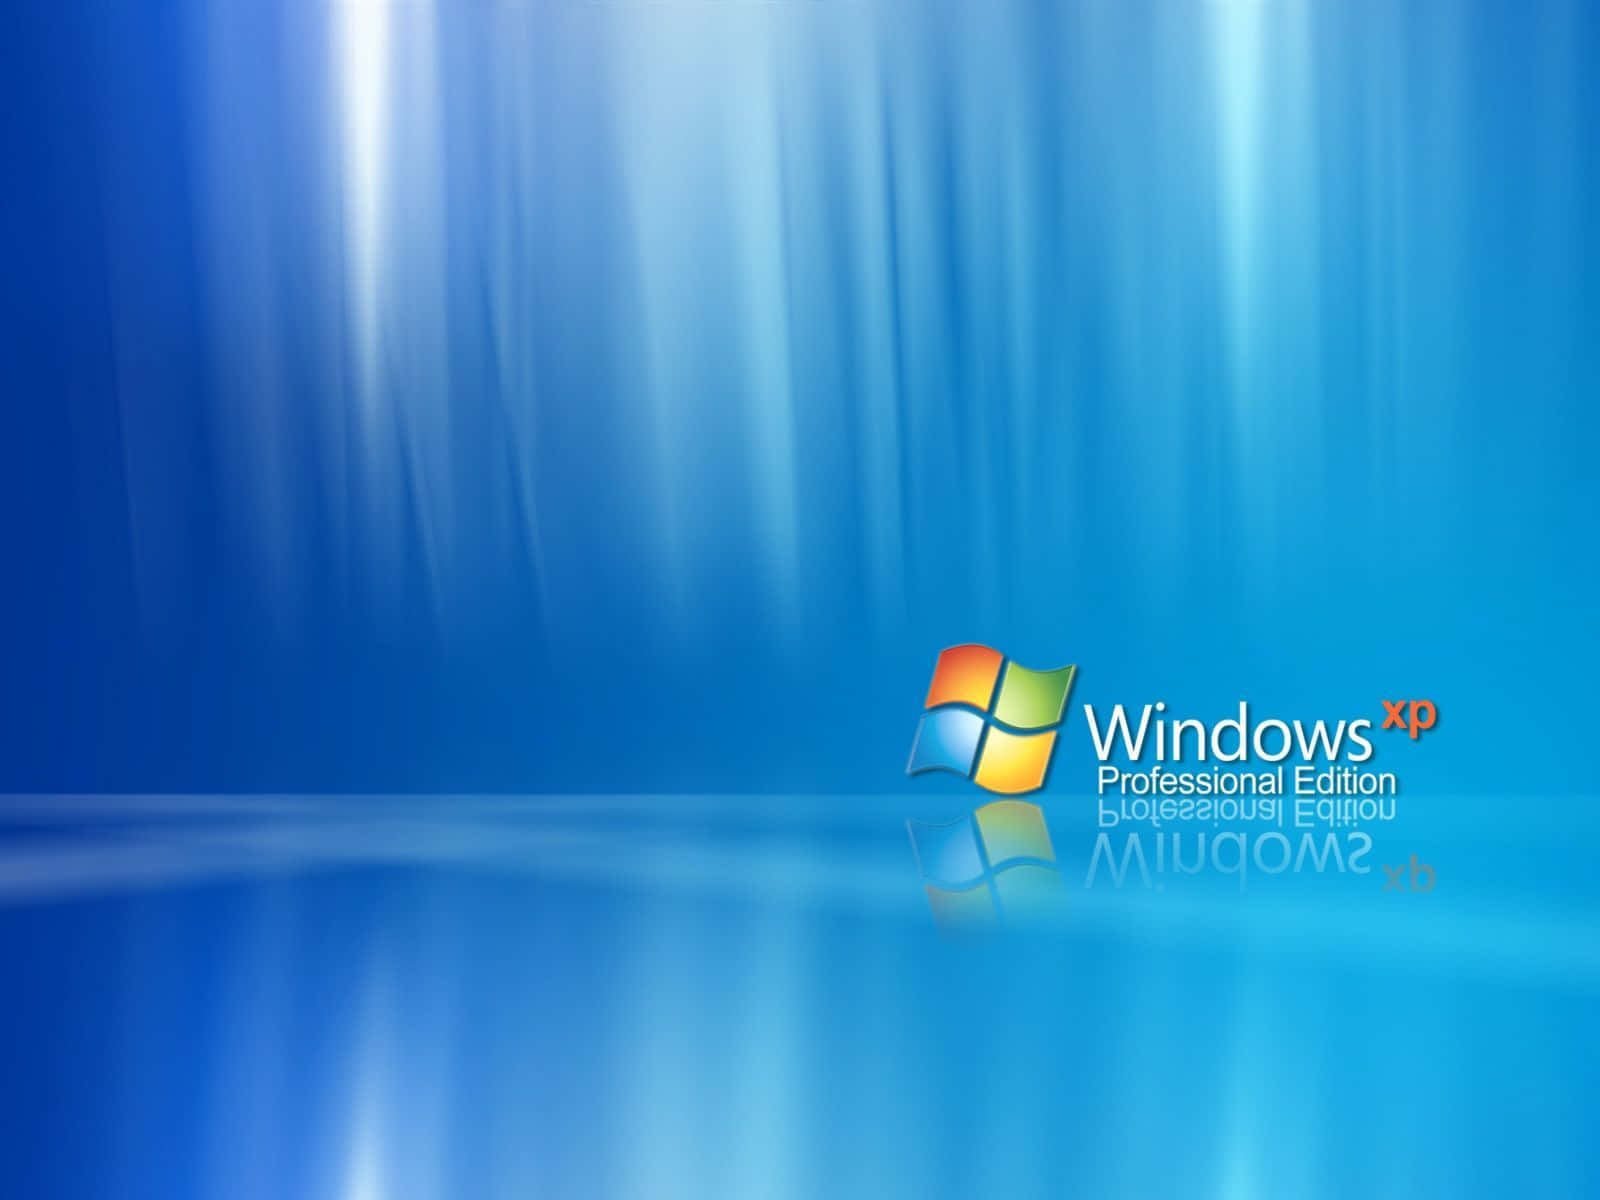 Get to Know Windows XP